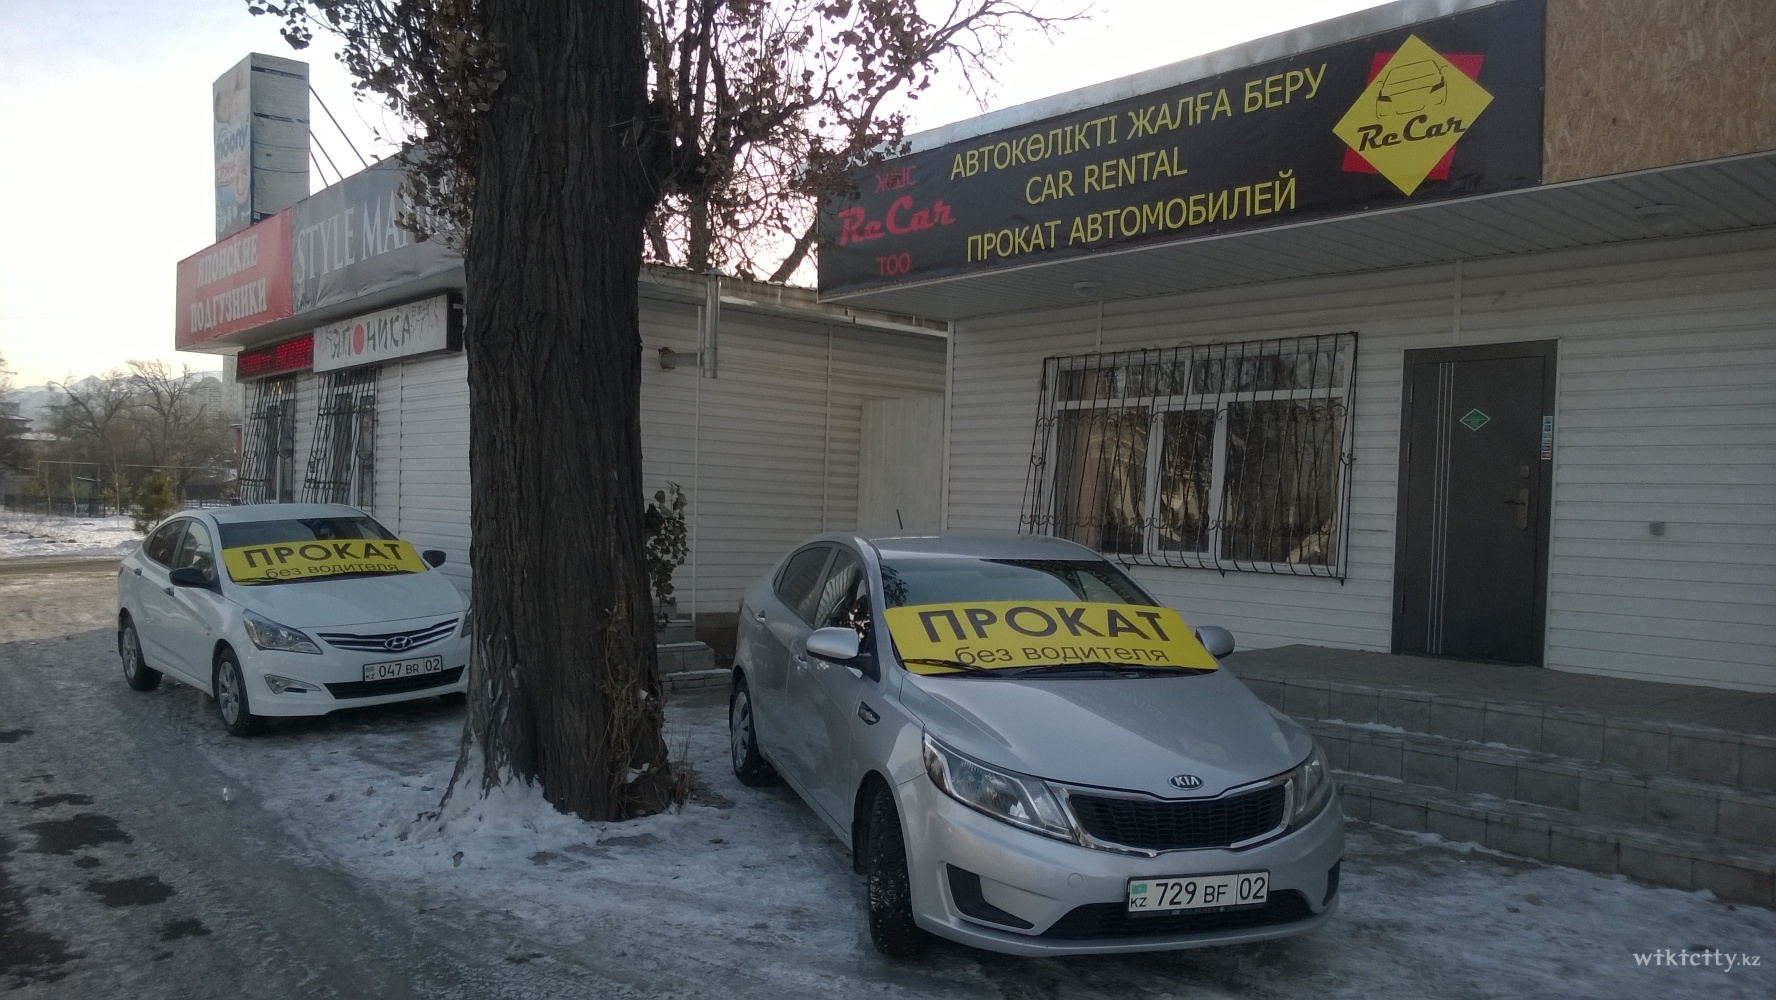 Фото ReCar - Алматы. ReCar офис проката автомобилей без водителя